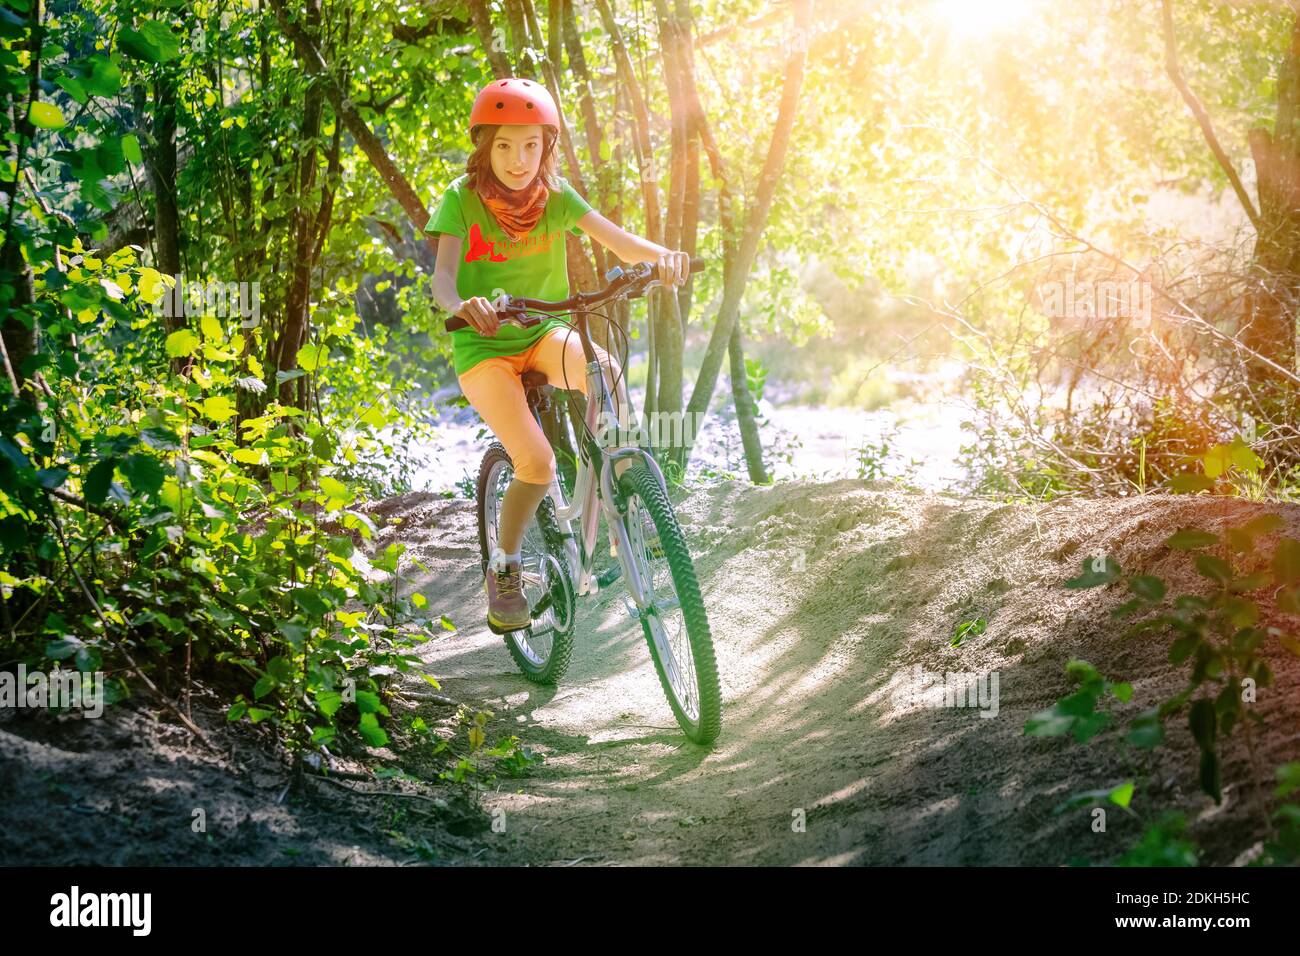 Italie, Vénétie, Belluno, Agordino, petite fille (10 ans) s'amuse avec sa bicyclette le long d'un chemin forestier Banque D'Images